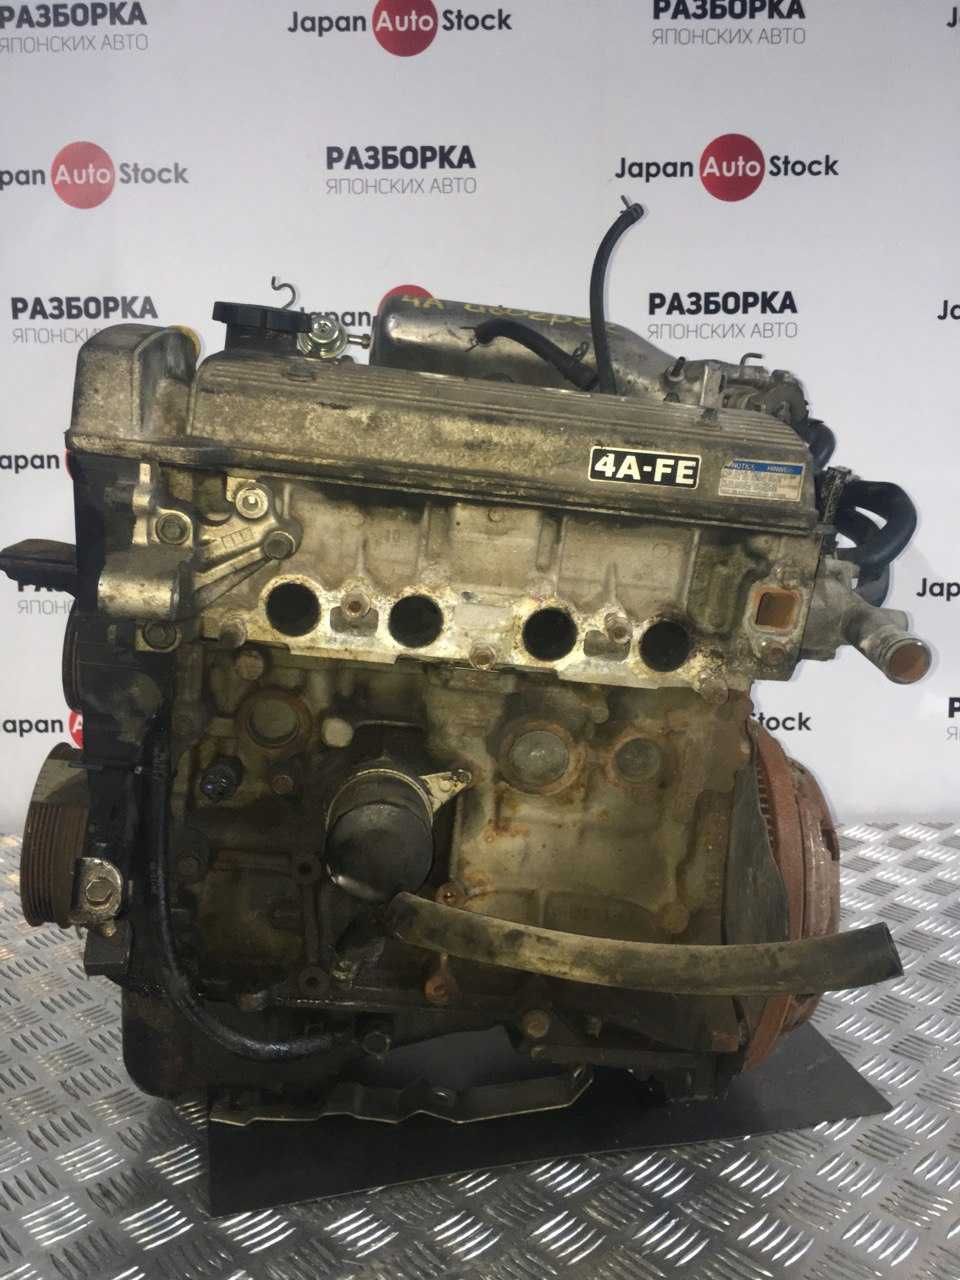 Двигатель Toyota Avensis, 4 AFE катушечный, объём 1.6, год 1998-2000